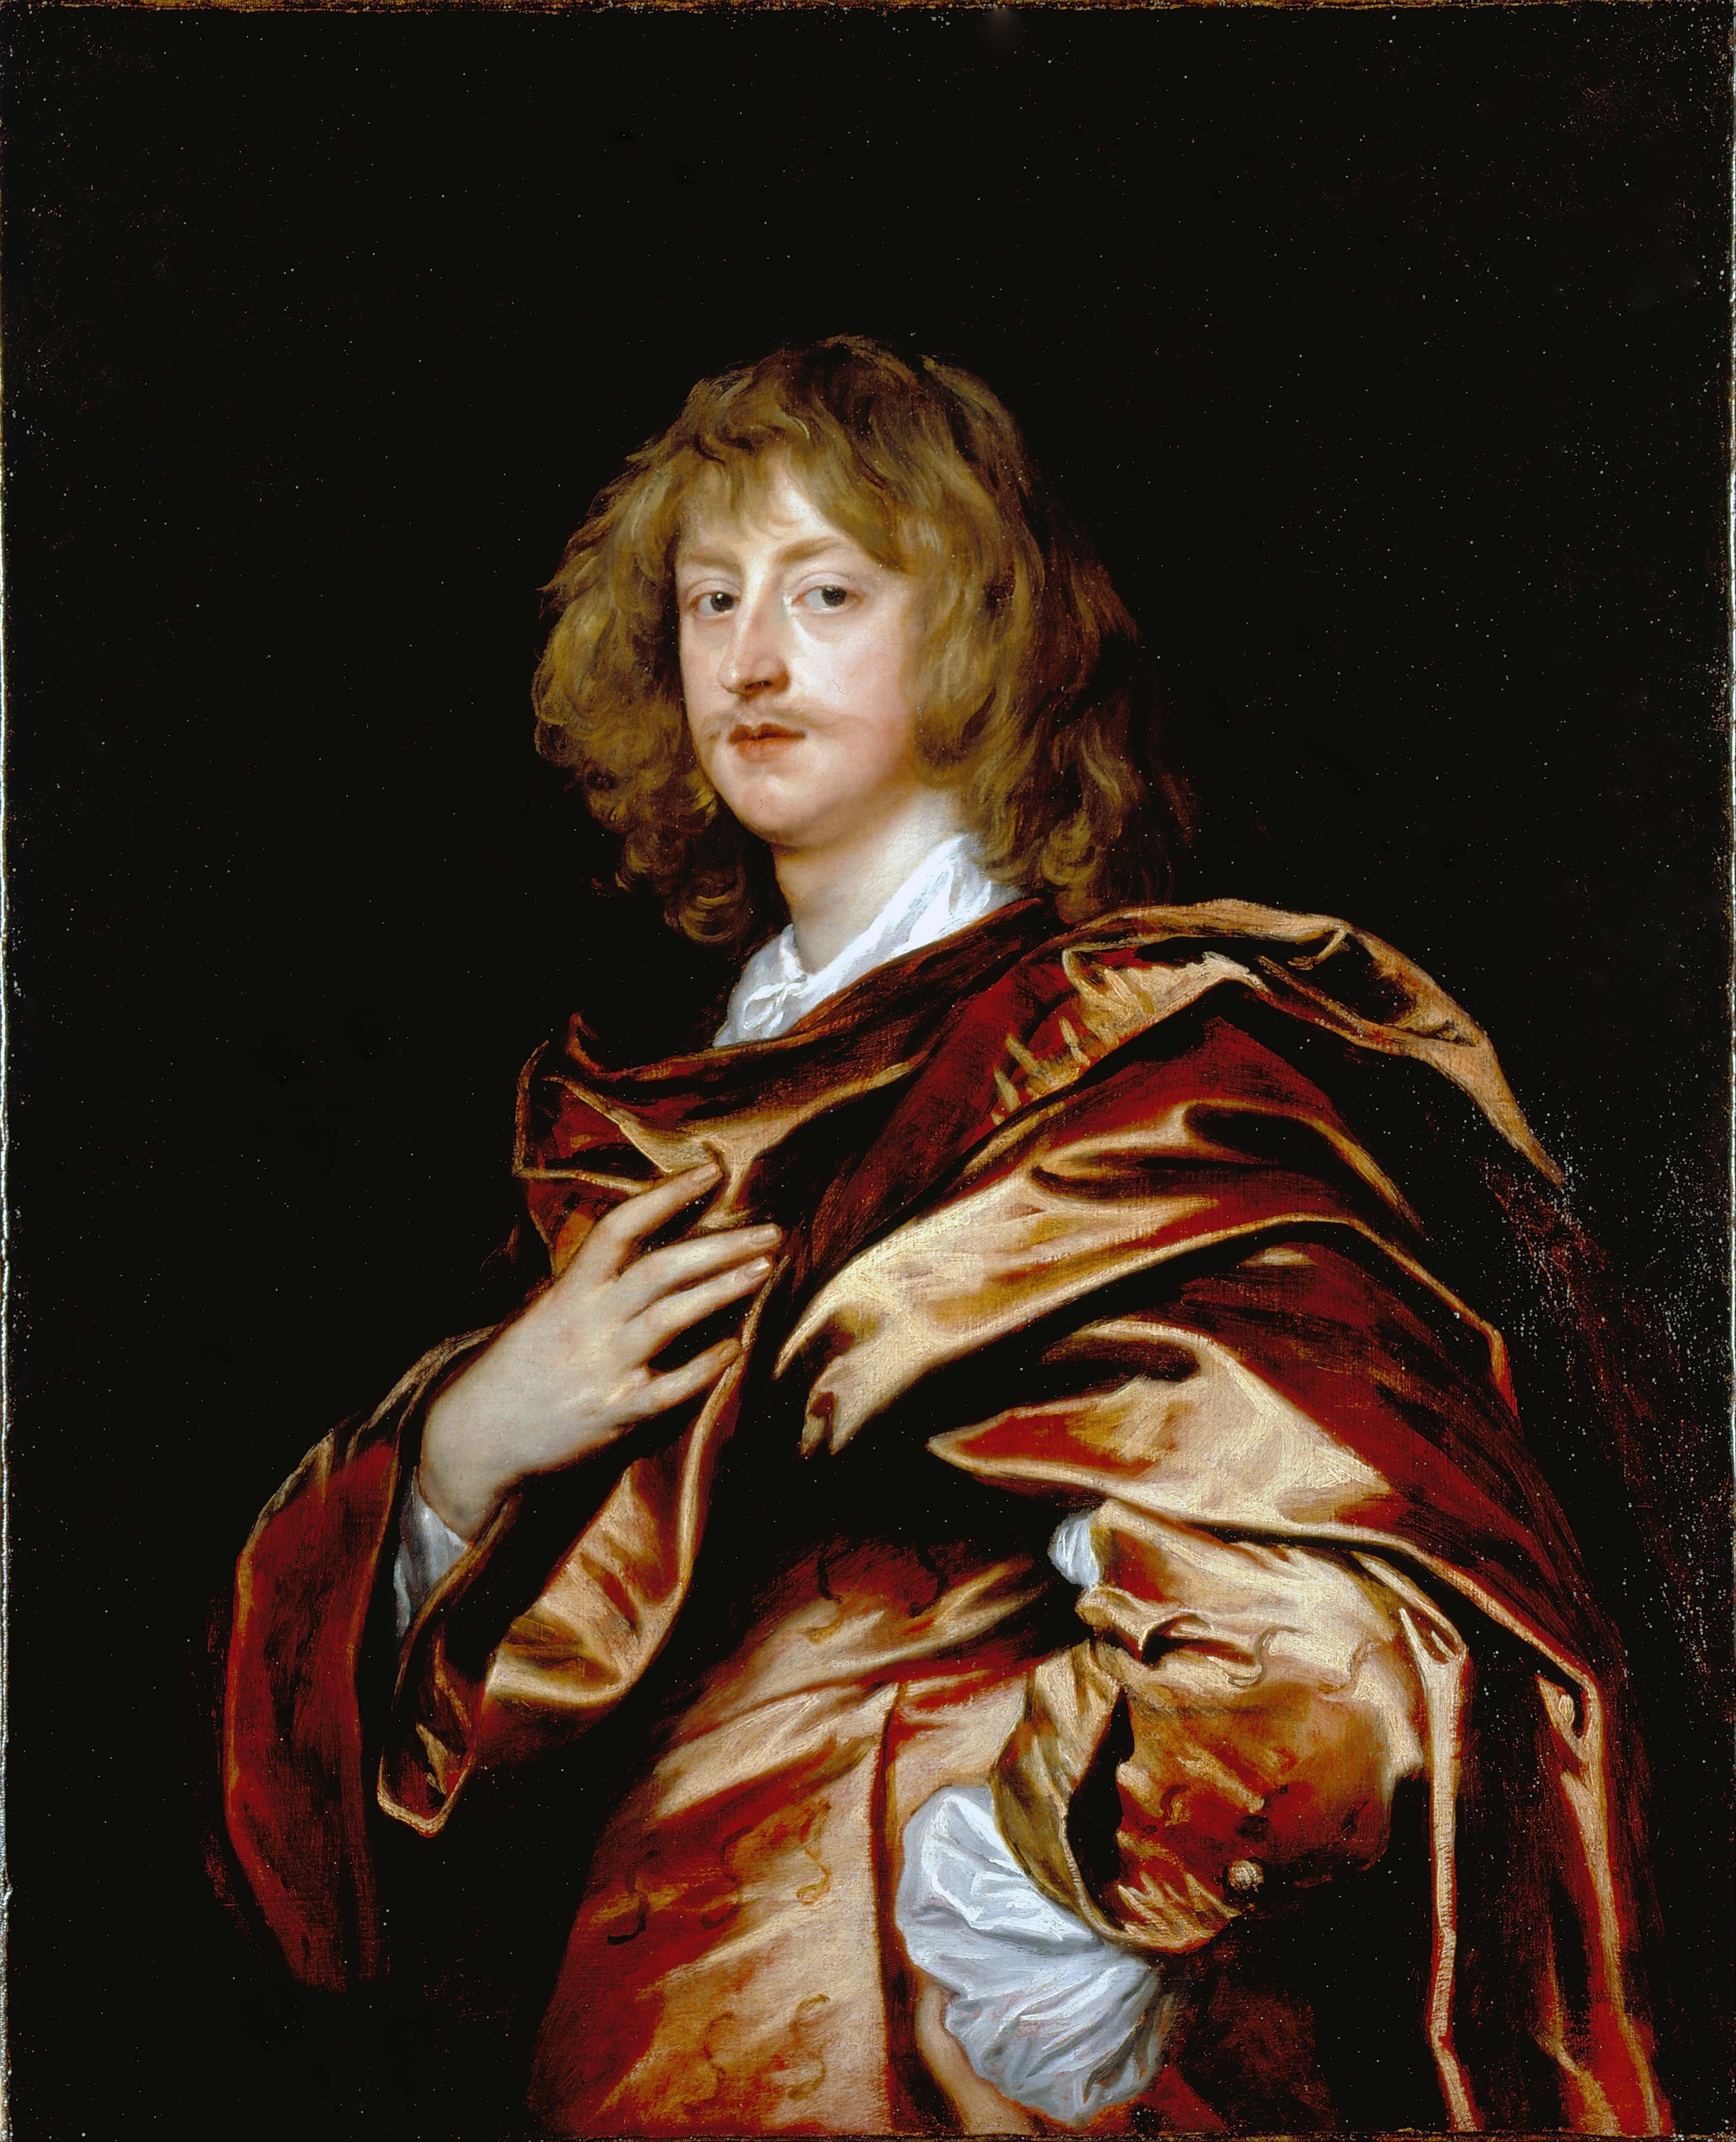 ジョージ・ディグビー、第2代ブリストル伯爵 by Anthony van Dyck - 推定1638 - 103.2 x 83.2 cm 